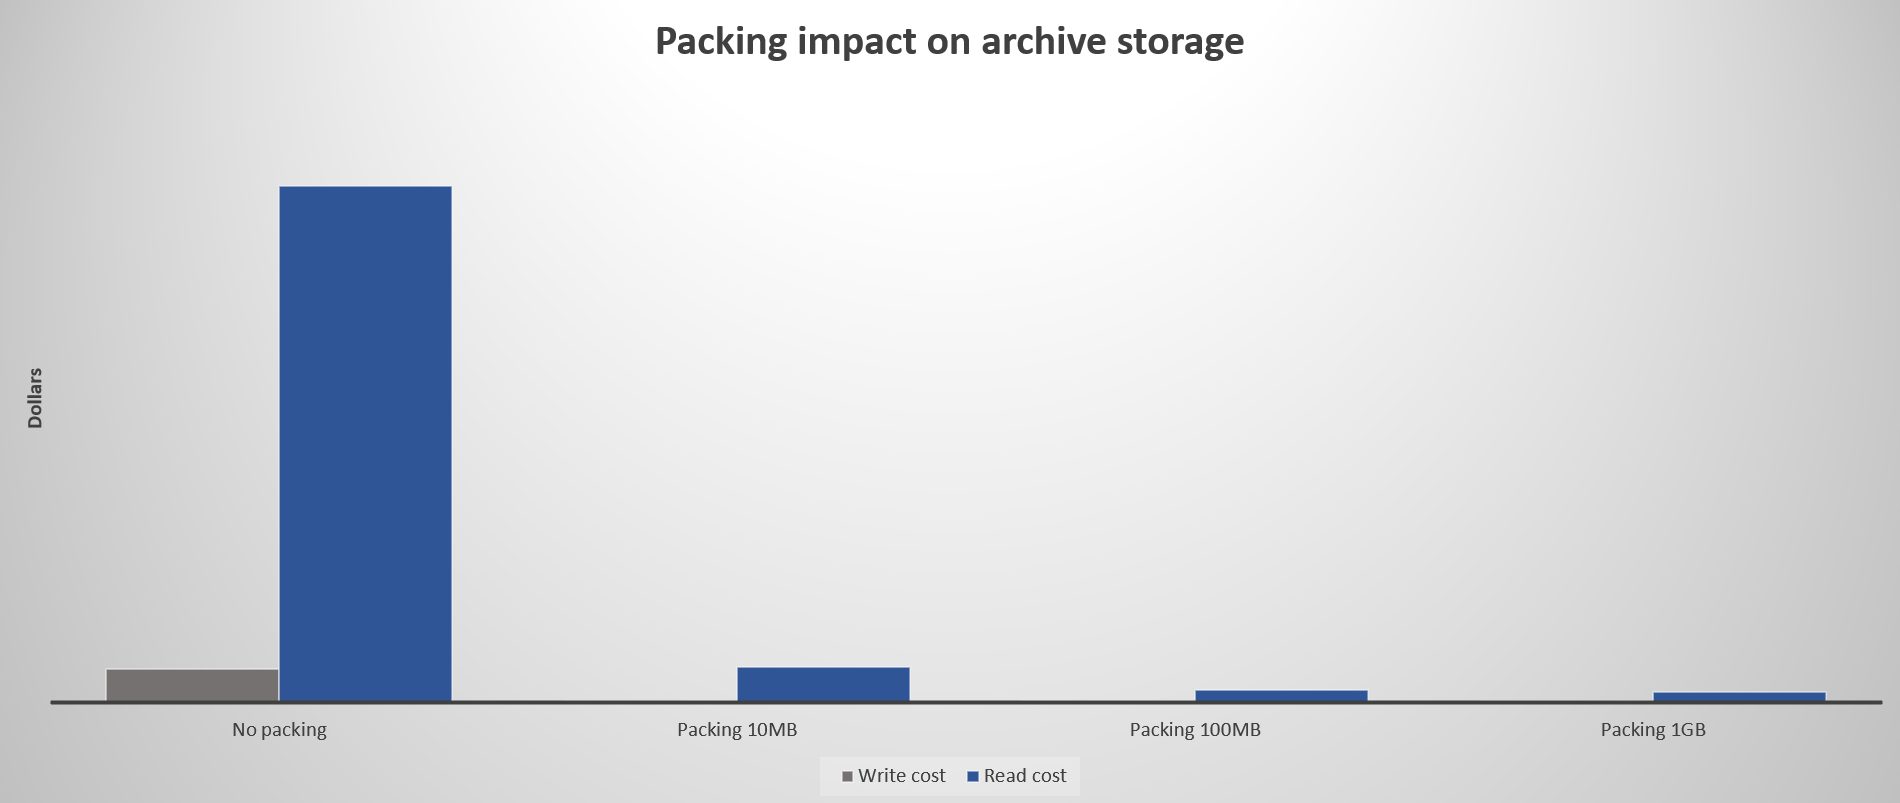 Graf znázorňující dopad na náklady při balení malých souborů před nahráním do archivní úrovně přístupu